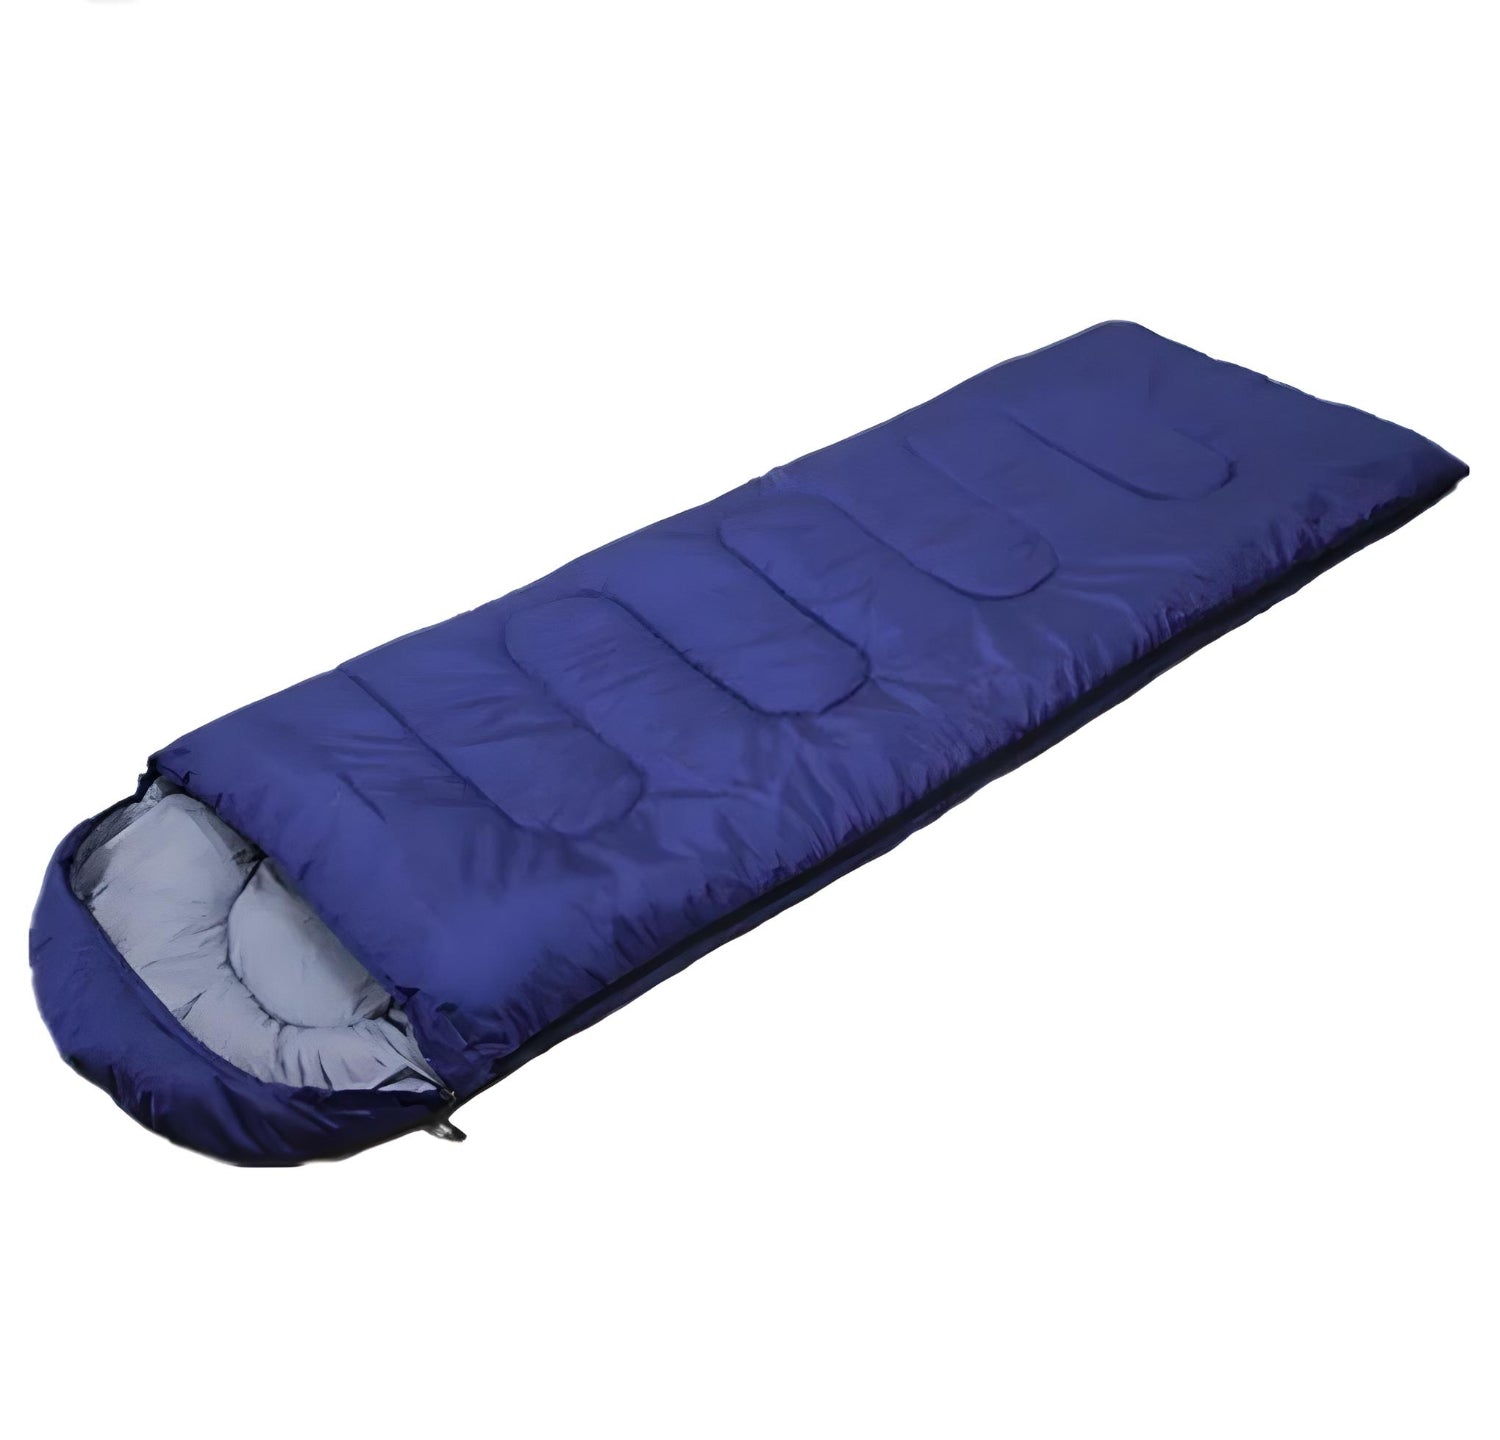 warm-weather-sleeping-bag